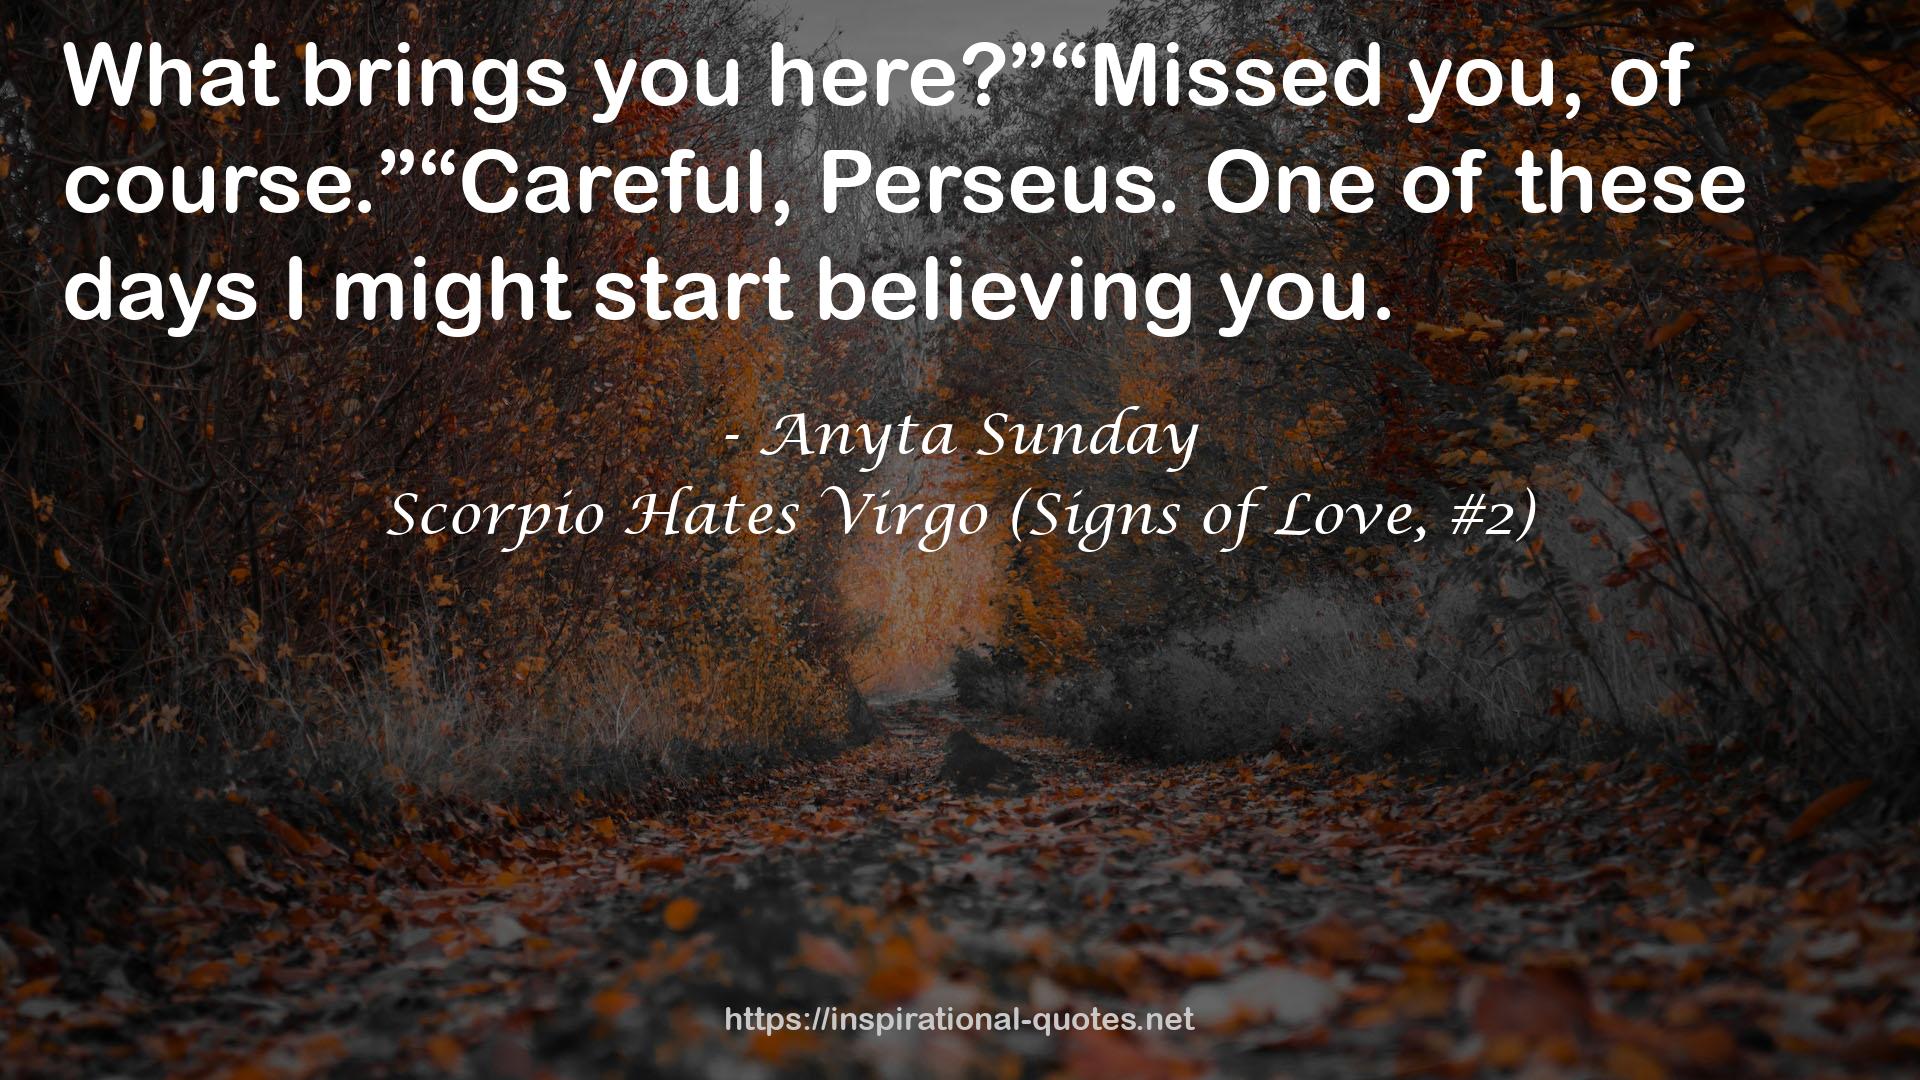 Scorpio Hates Virgo (Signs of Love, #2) QUOTES